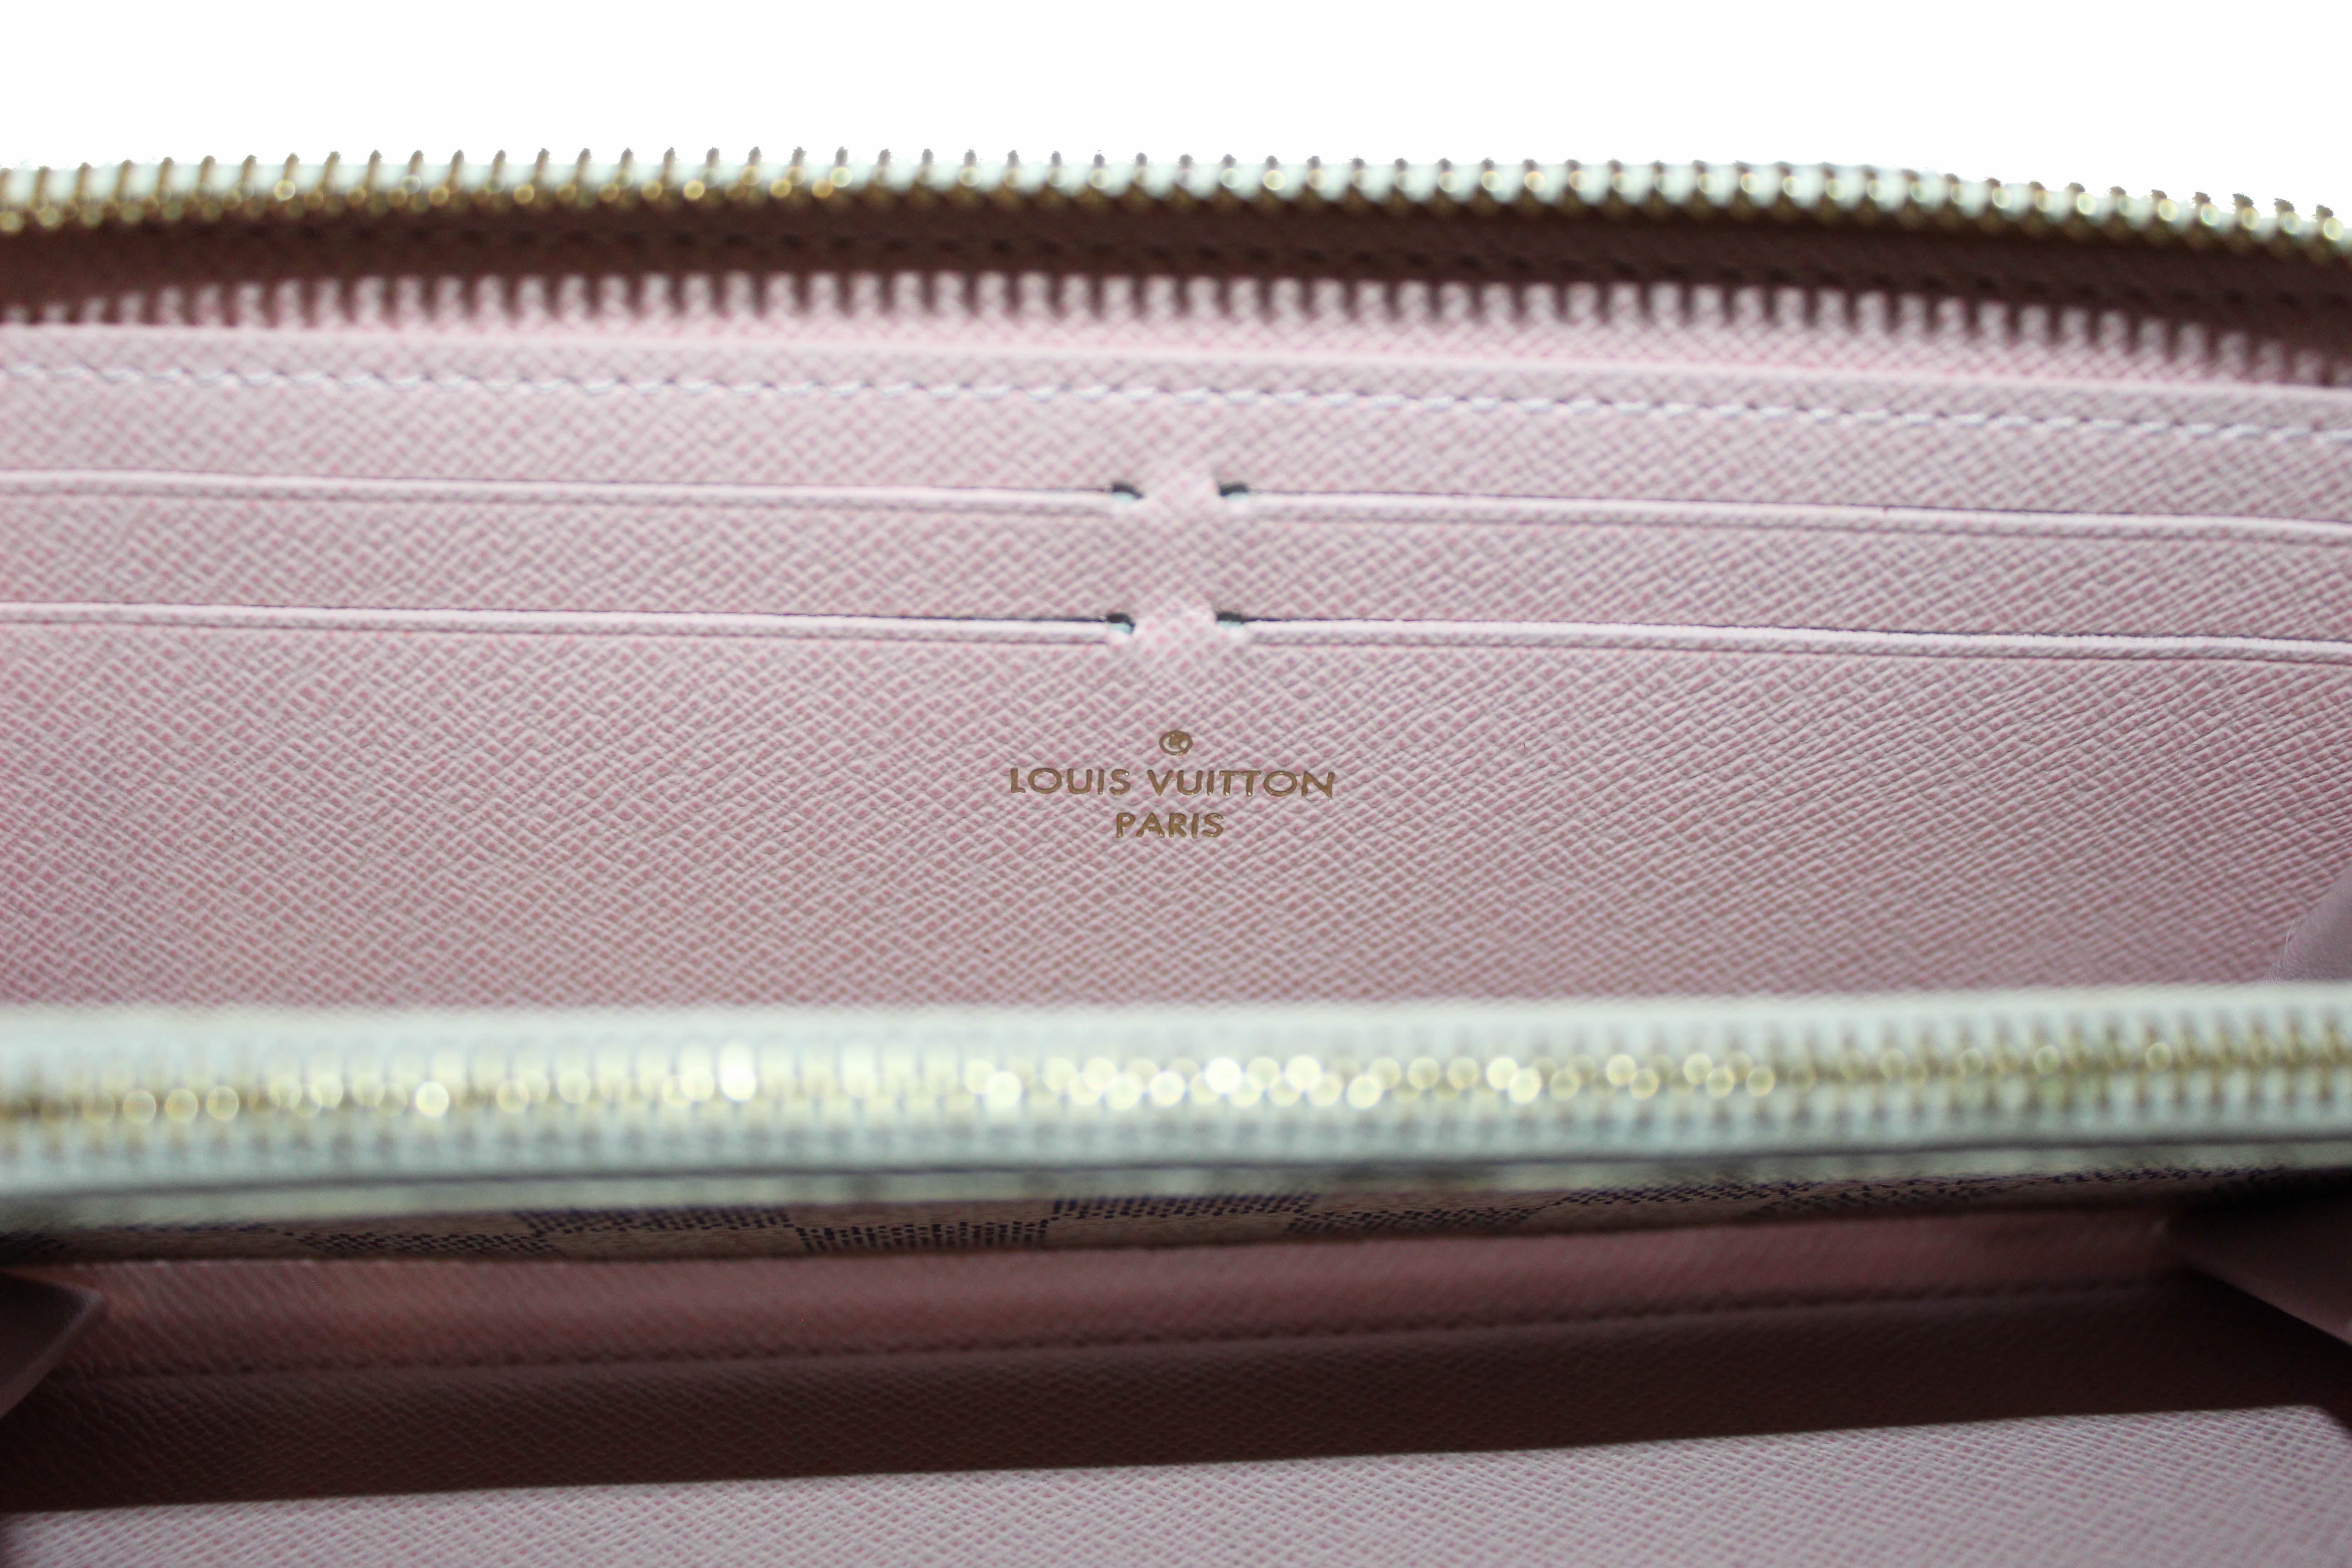 Louis Vuitton Damier Ebene Zippy Wallet with Ballerina Interior